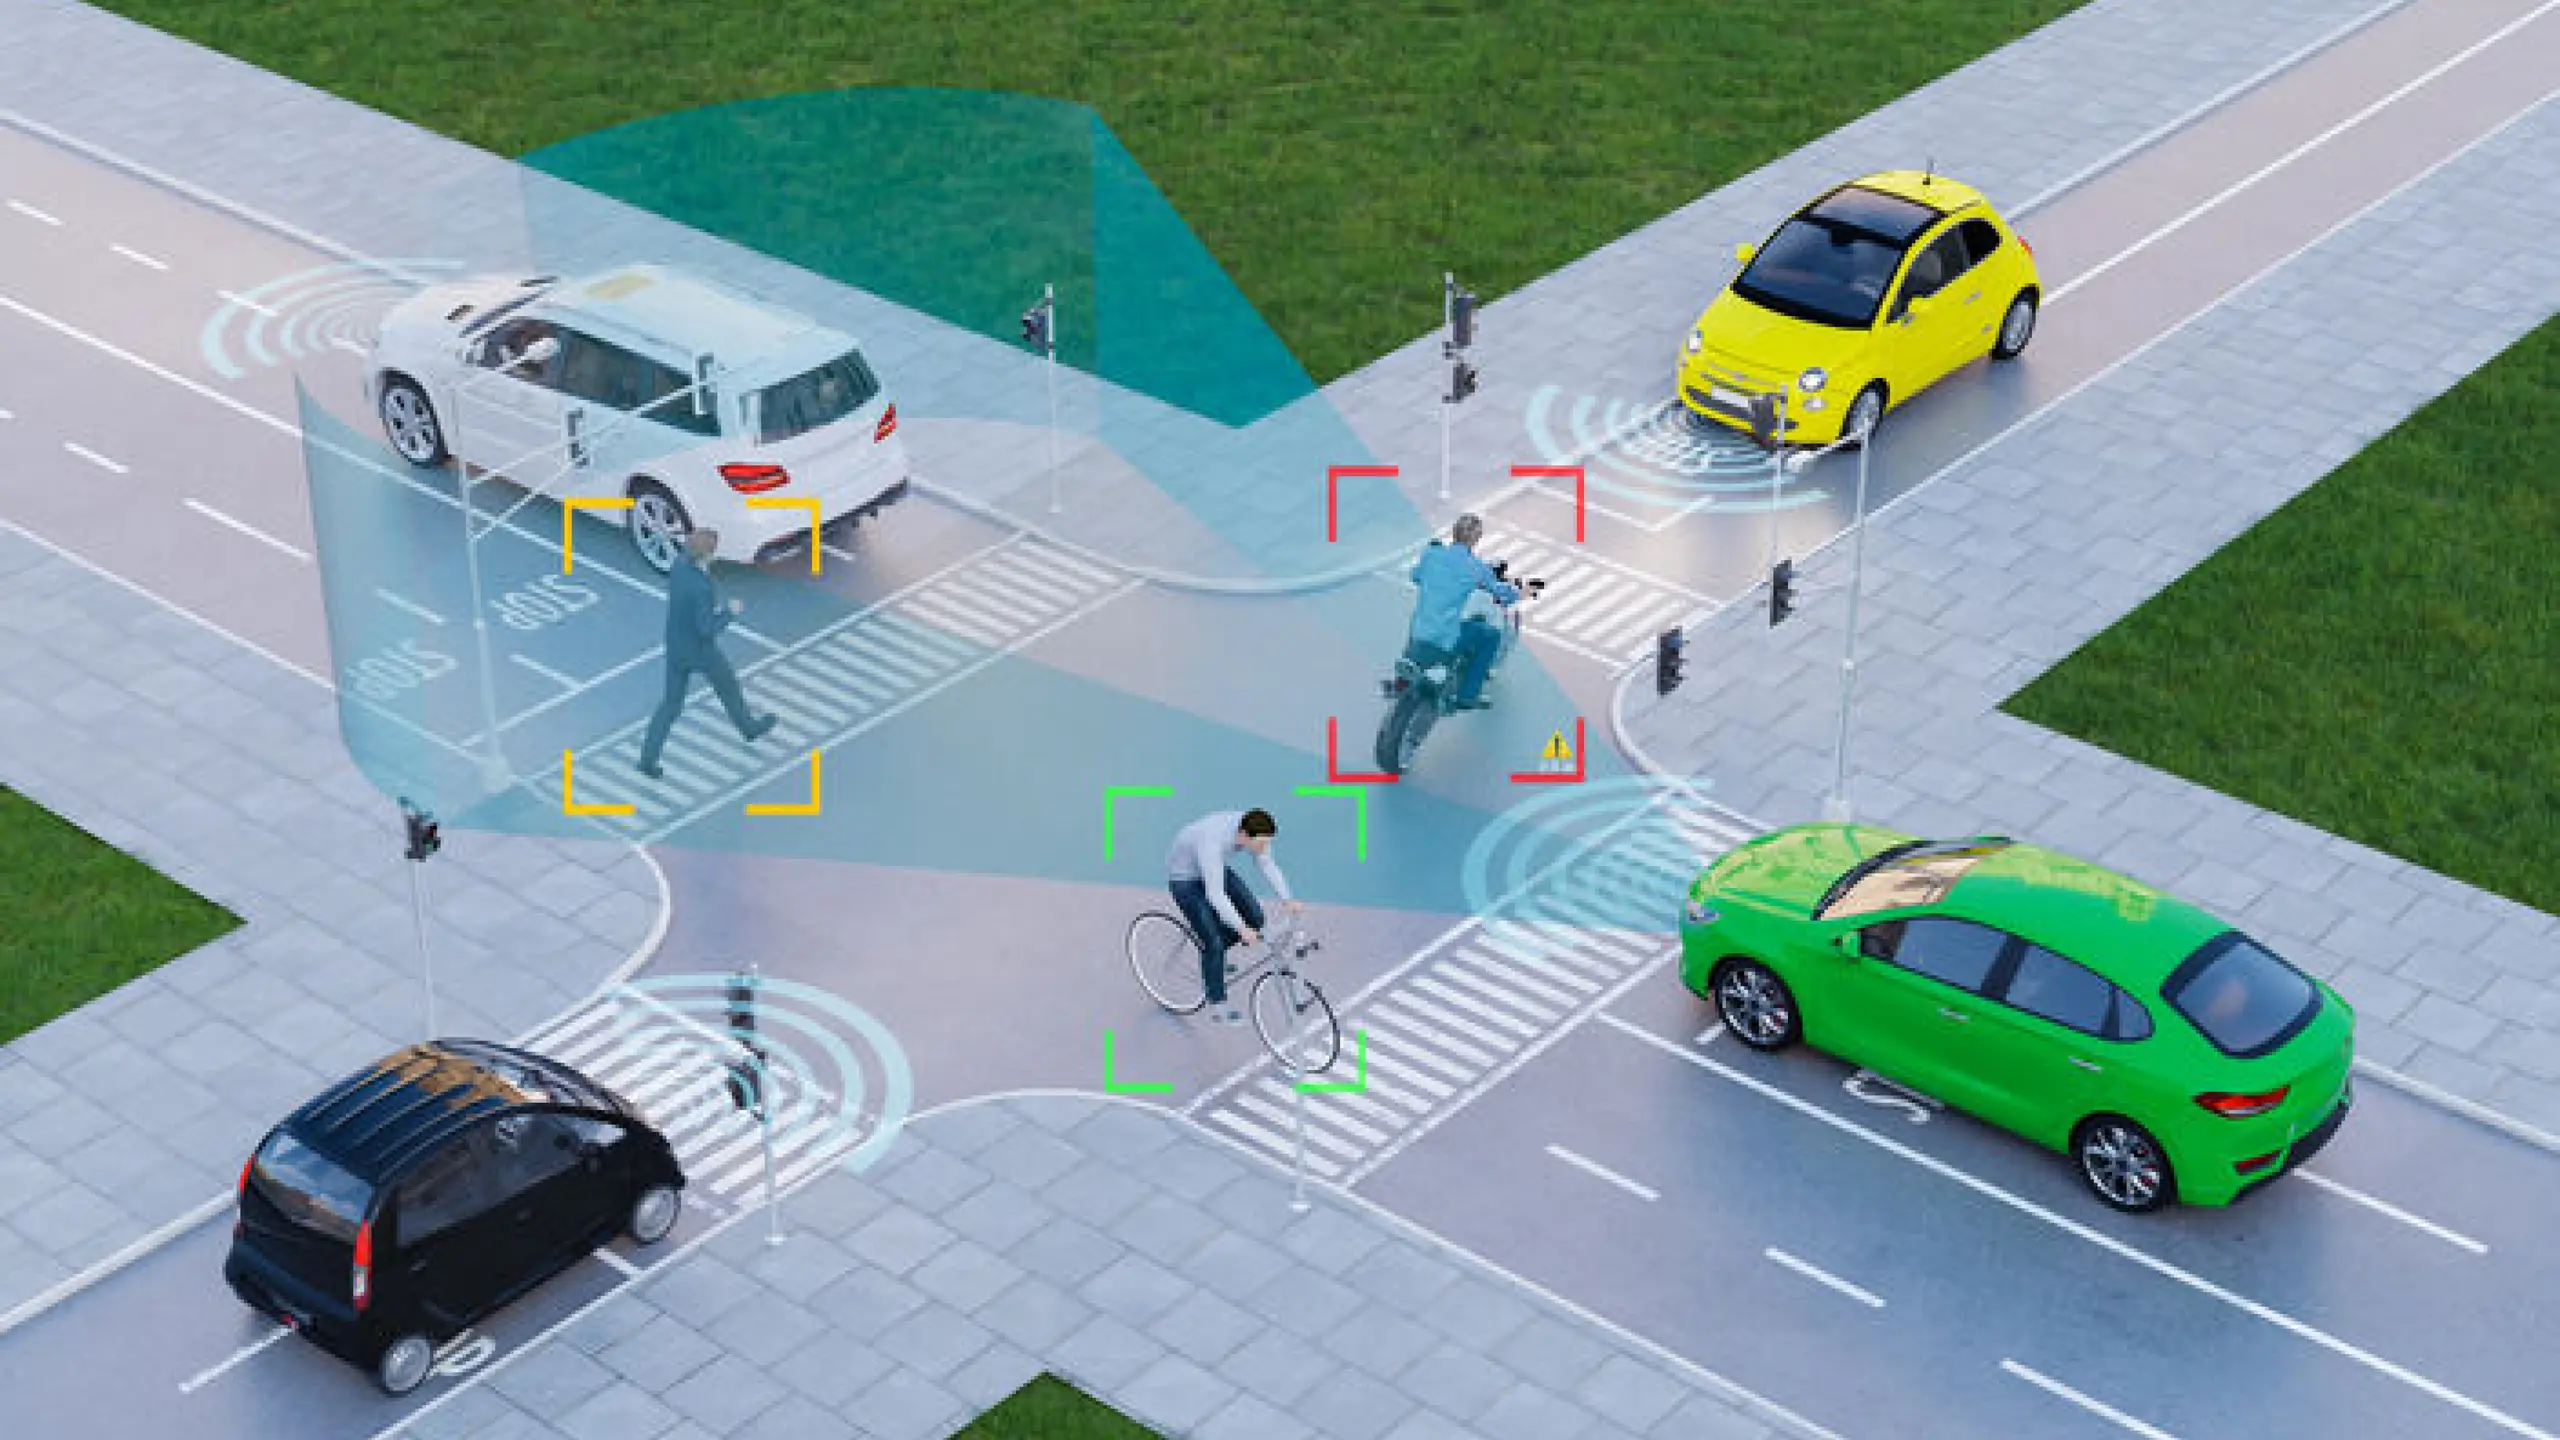 LIDAR: Schlüsseltechnologie und Distanzmessung für selbstfahrende Autos und andere autonome Maschinen